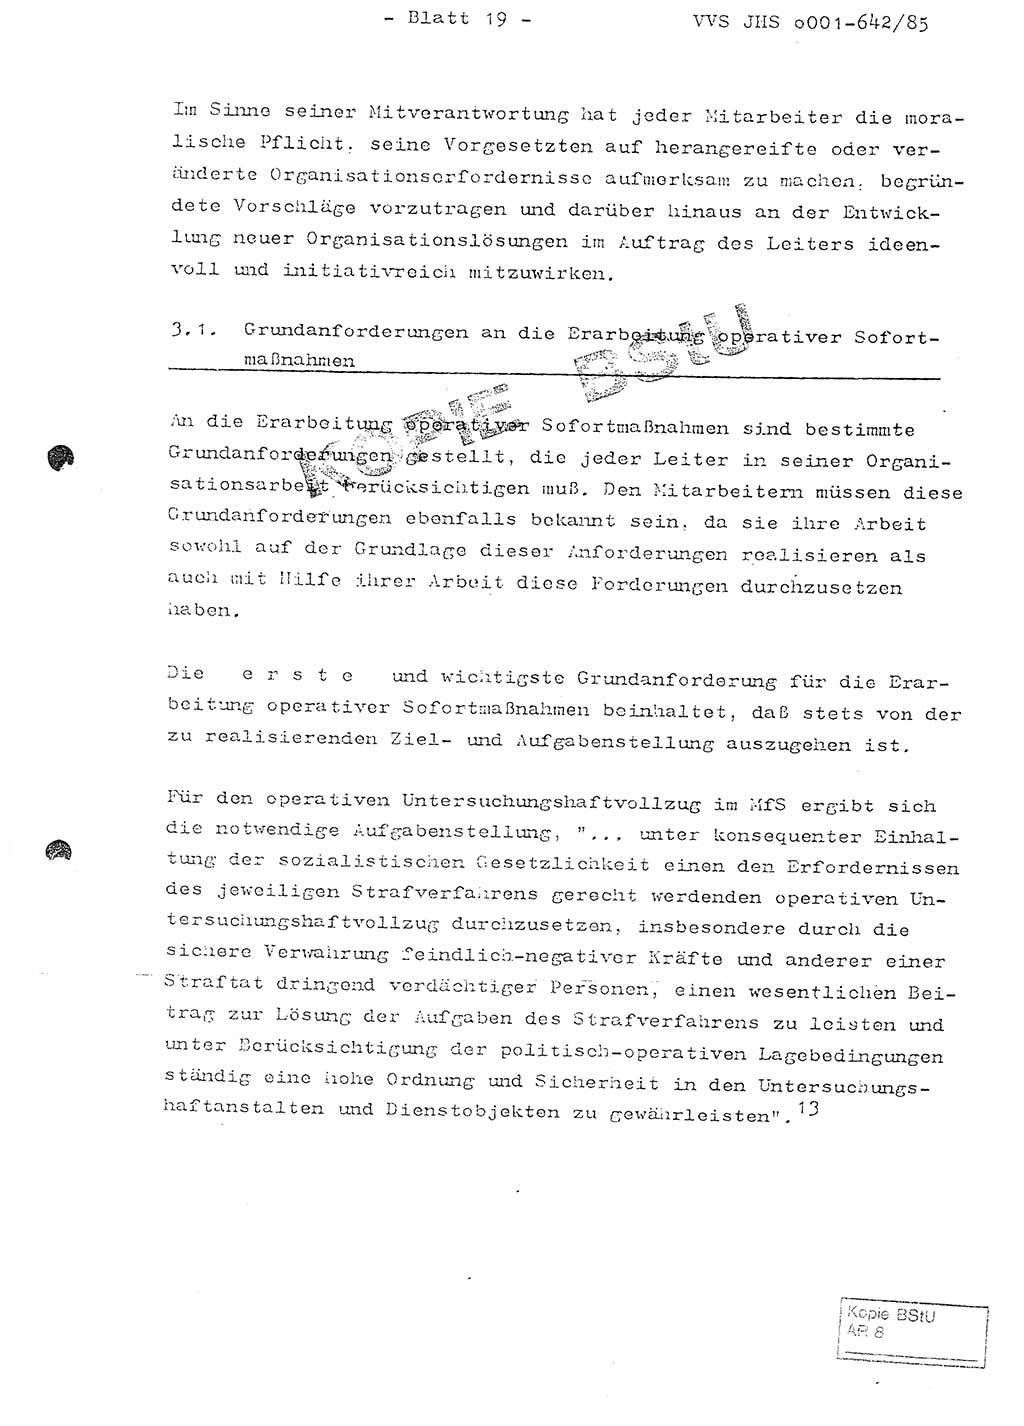 Fachschulabschlußarbeit Oberleutnant Lothar Fahland (Abt. ⅩⅣ), Ministerium für Staatssicherheit (MfS) [Deutsche Demokratische Republik (DDR)], Juristische Hochschule (JHS), Vertrauliche Verschlußsache (VVS) o001-642/85, Potsdam 1985, Blatt 19 (FS-Abschl.-Arb. MfS DDR JHS VVS o001-642/85 1985, Bl. 19)